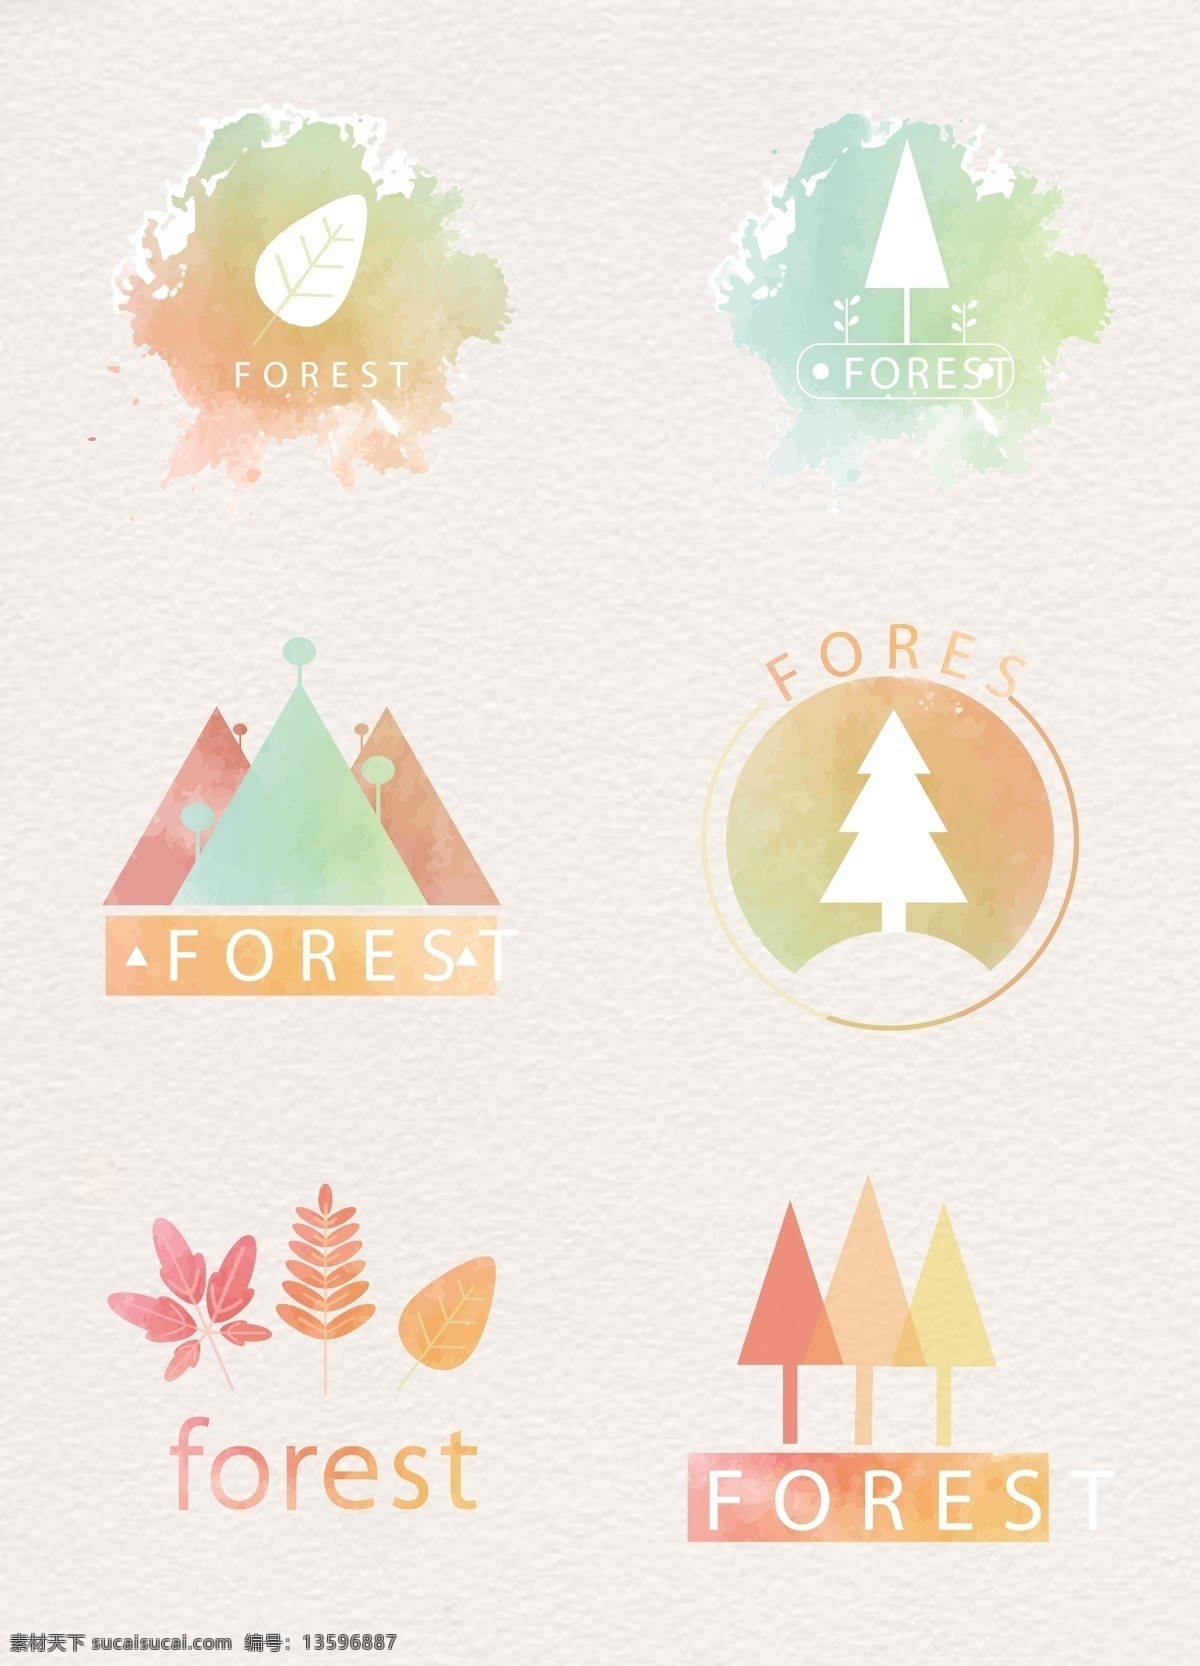 水彩 绘 森林 标志 矢量 树叶 叶子 矢量图 树木 植物